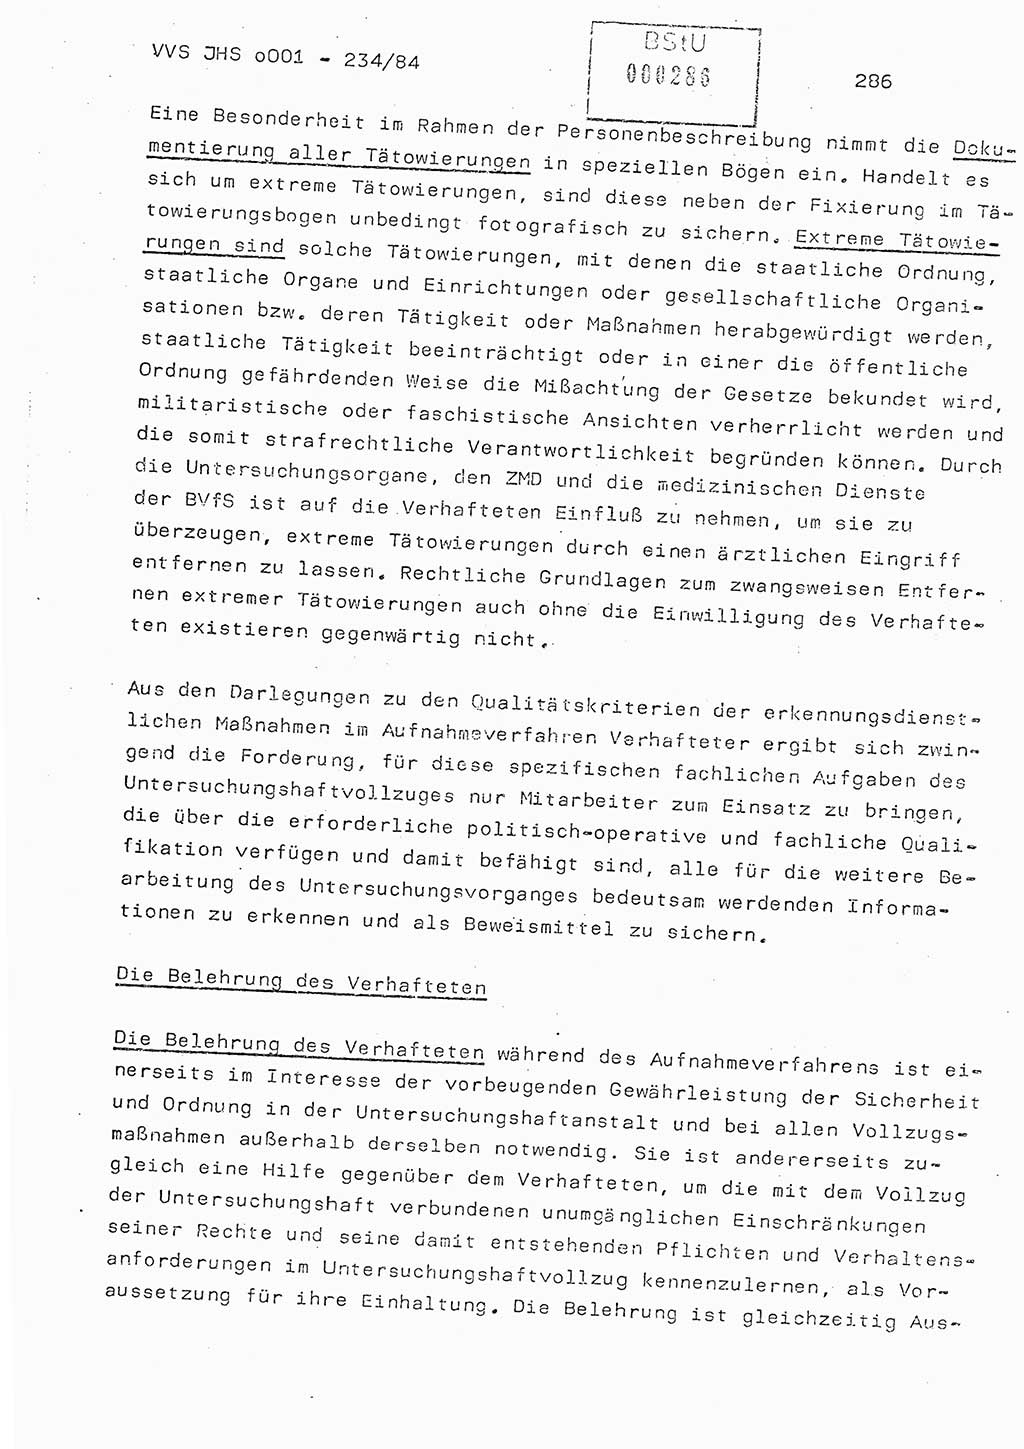 Dissertation Oberst Siegfried Rataizick (Abt. ⅩⅣ), Oberstleutnant Volkmar Heinz (Abt. ⅩⅣ), Oberstleutnant Werner Stein (HA Ⅸ), Hauptmann Heinz Conrad (JHS), Ministerium für Staatssicherheit (MfS) [Deutsche Demokratische Republik (DDR)], Juristische Hochschule (JHS), Vertrauliche Verschlußsache (VVS) o001-234/84, Potsdam 1984, Seite 286 (Diss. MfS DDR JHS VVS o001-234/84 1984, S. 286)